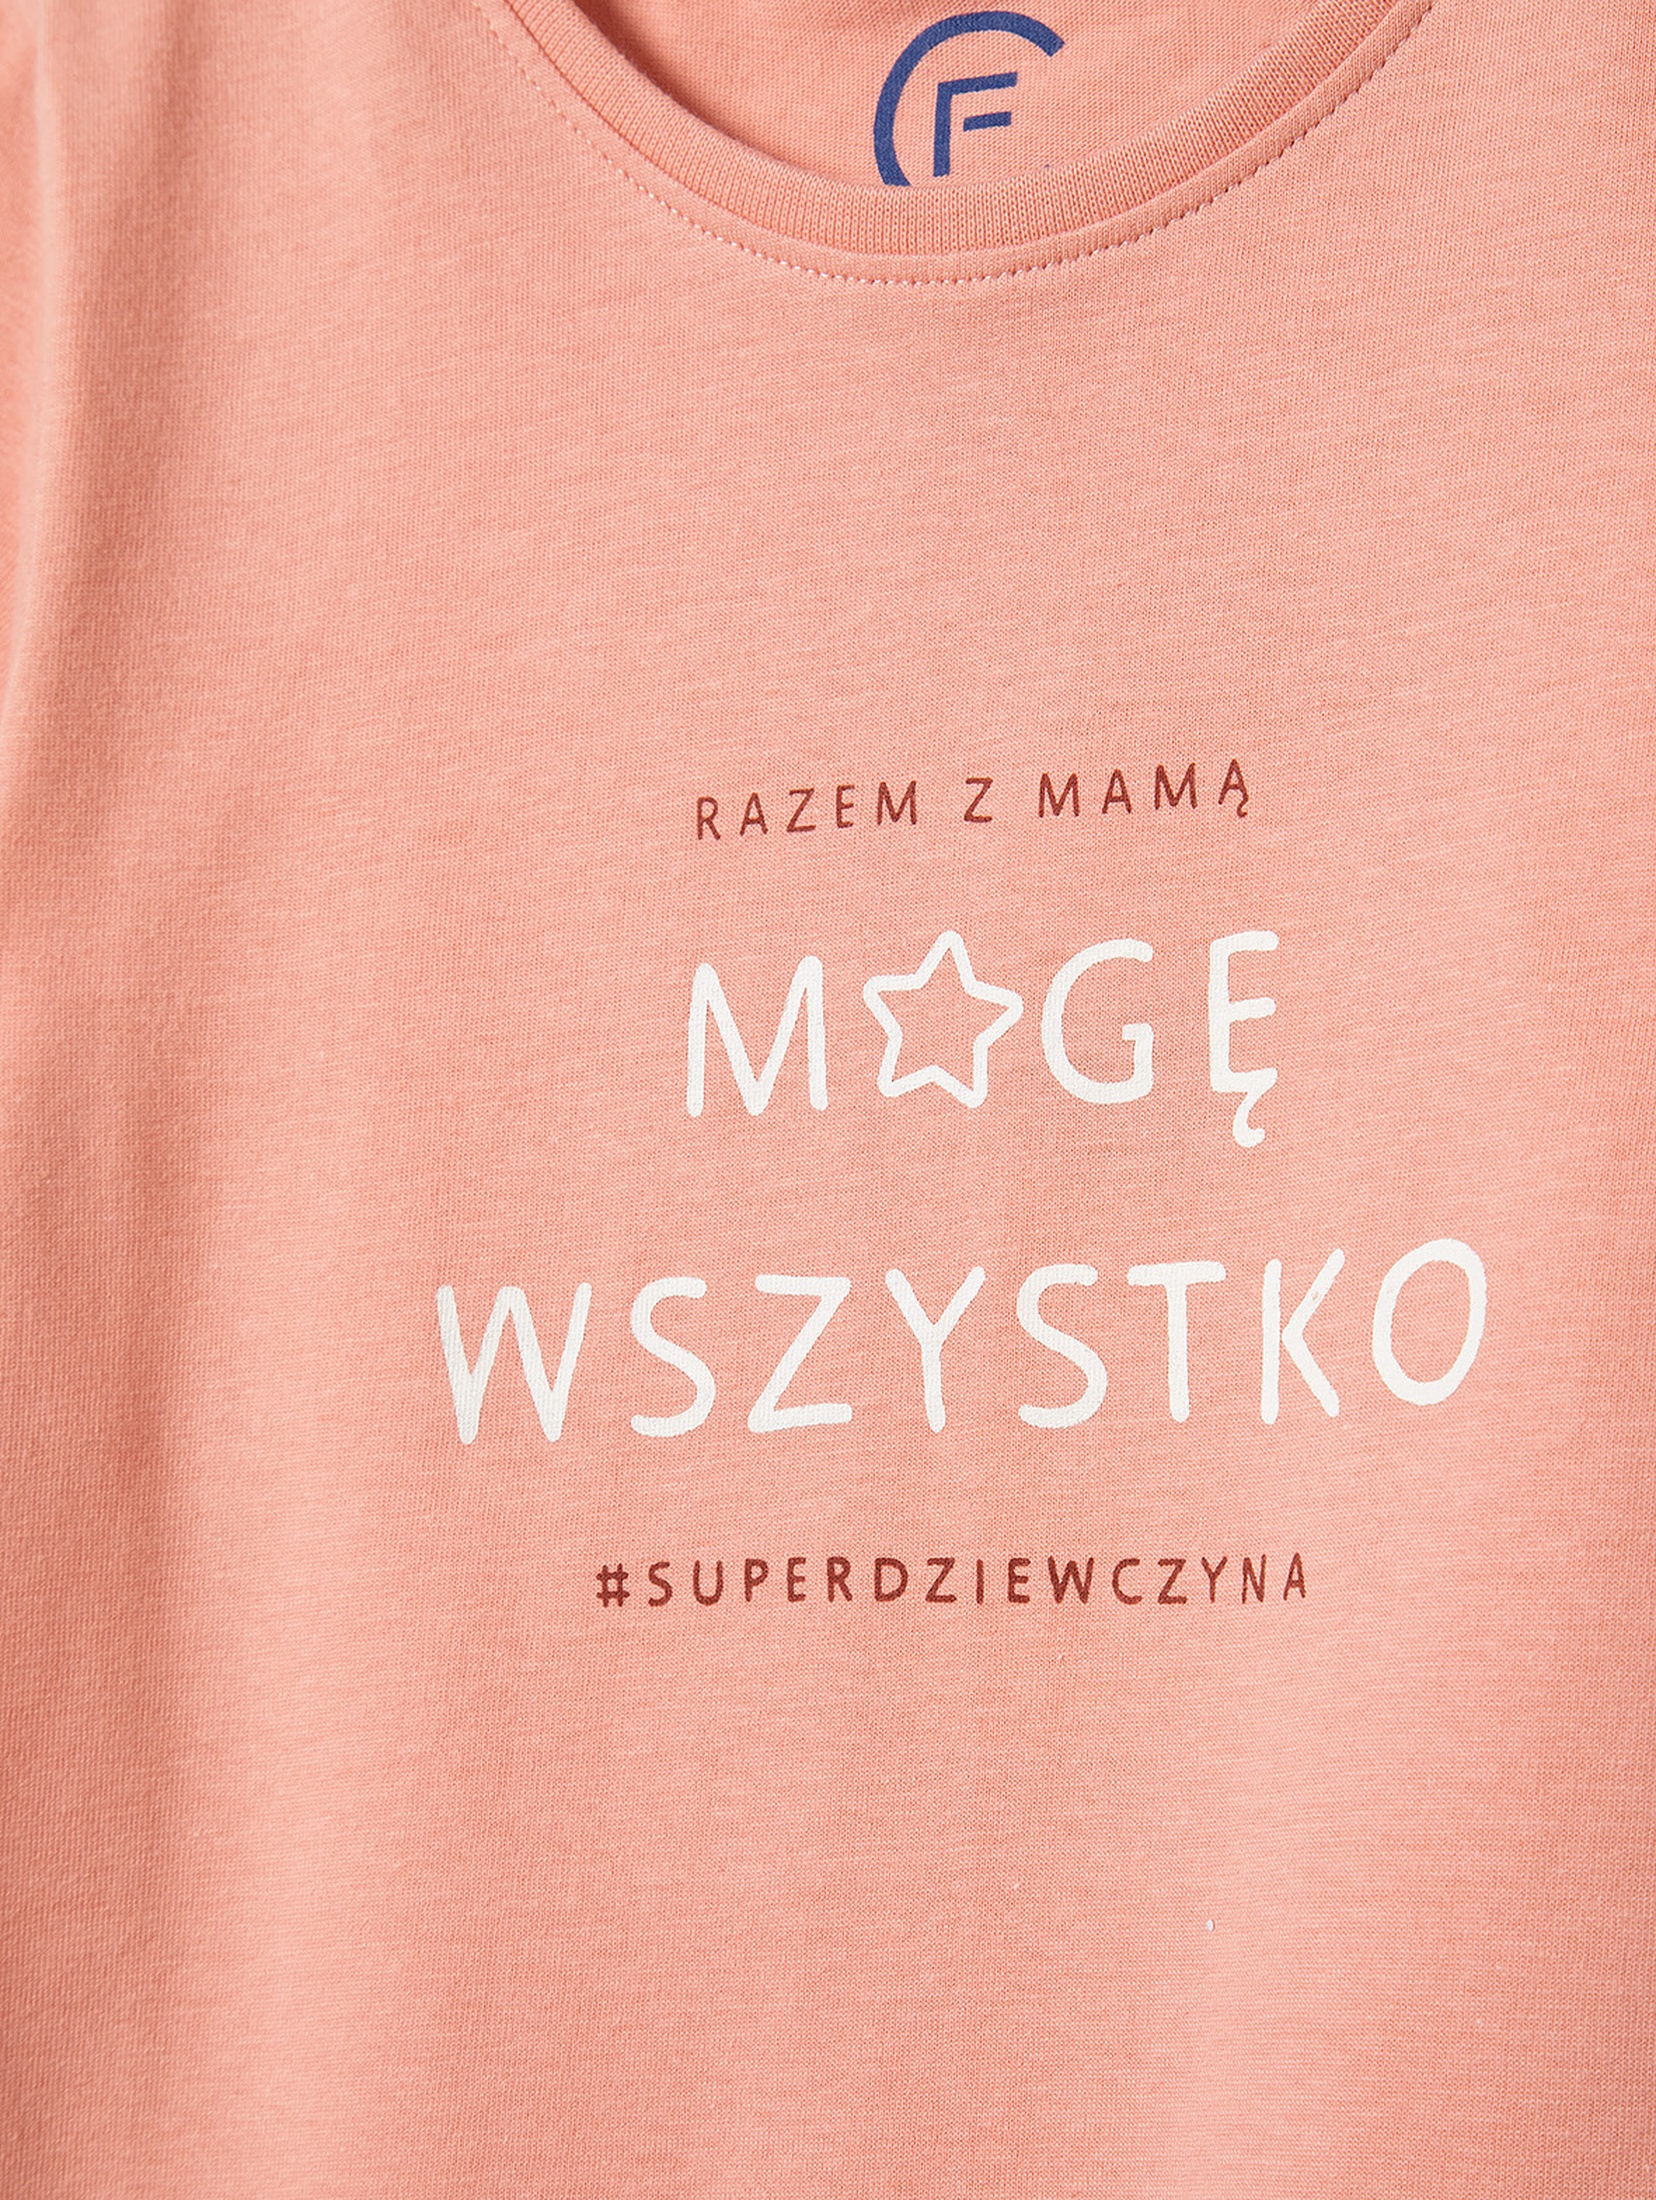 T-shirt bawełniany dla dziewczynki z napisem "Mogę Wszystko" - różowy